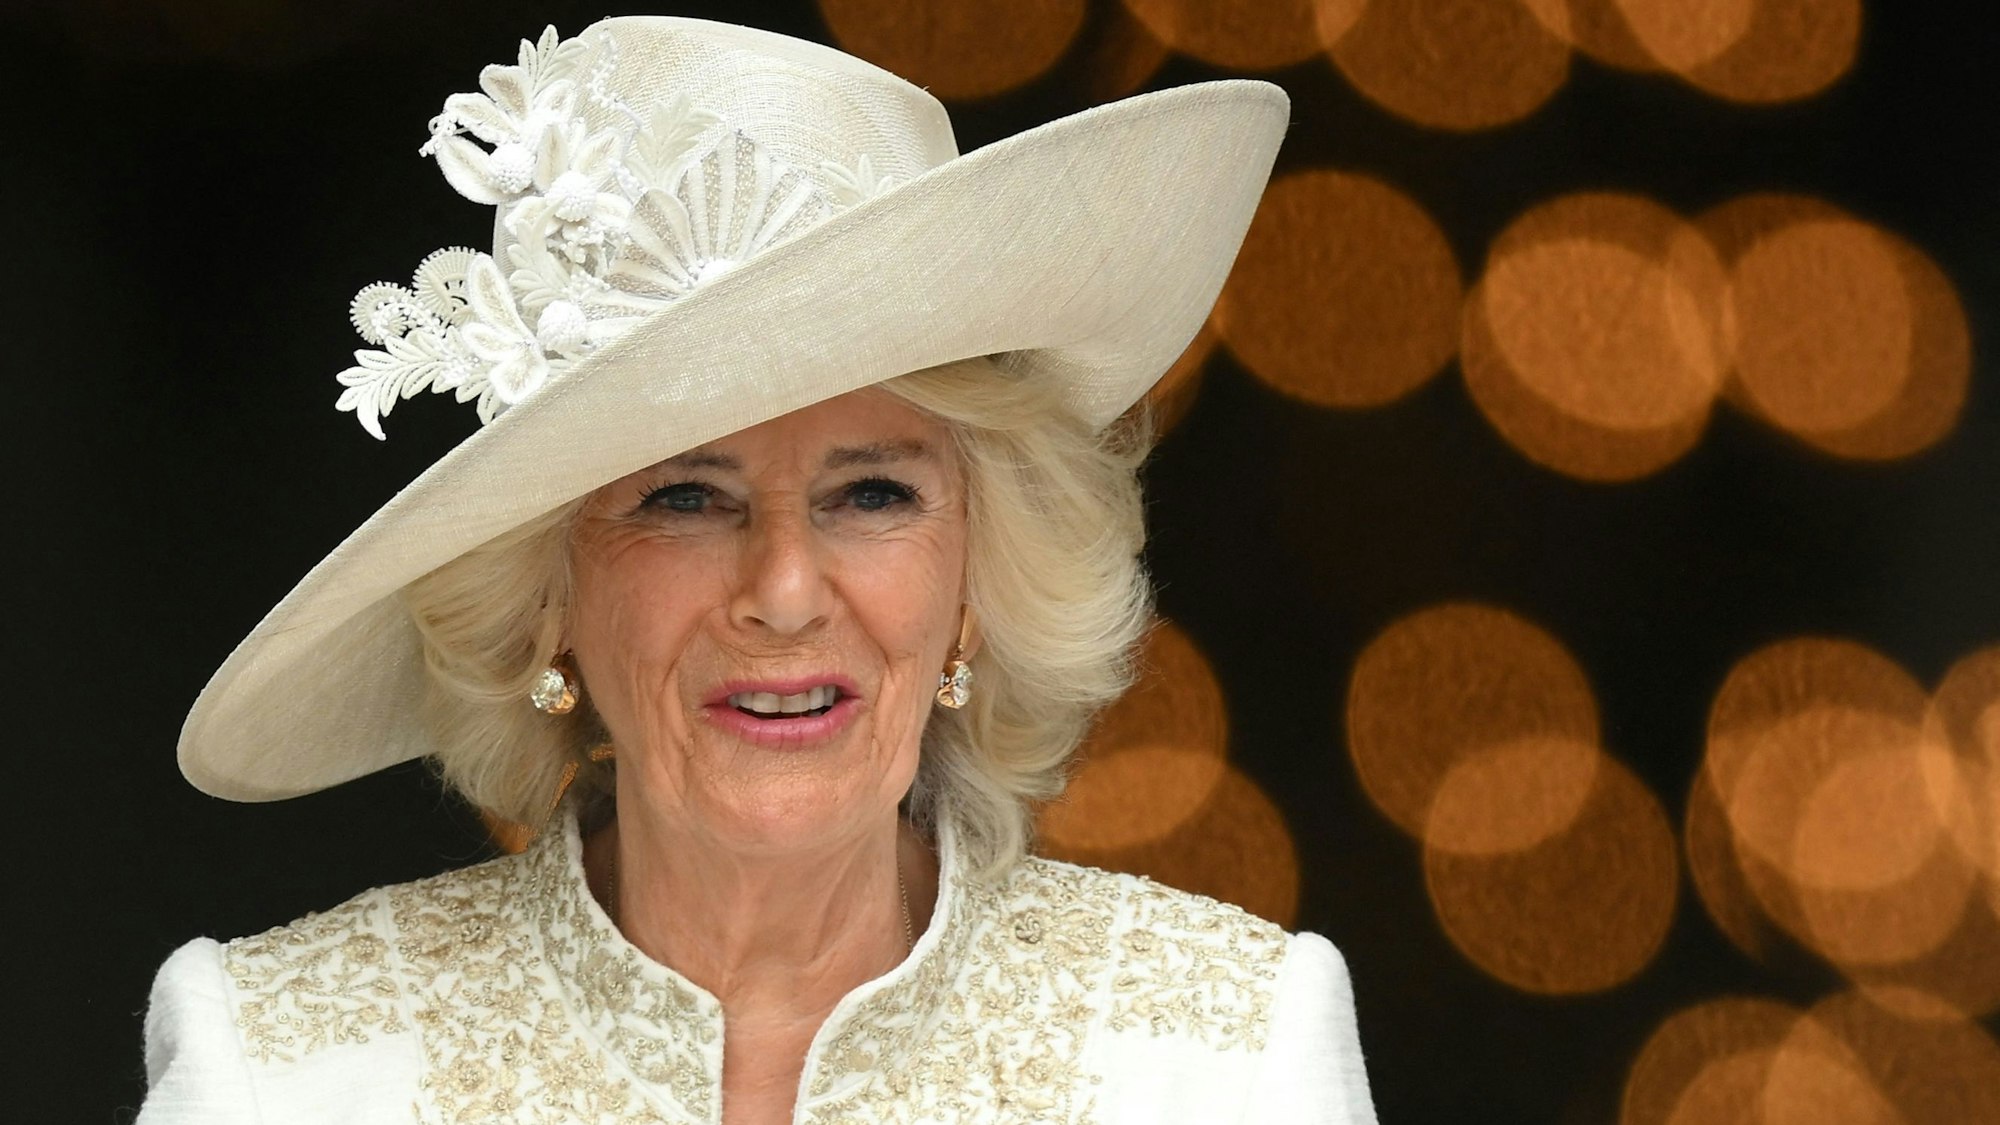 Königsgemahlin Camilla ist seit 2005 mit Charles verheiratet, am 6. Mai wird sie zur Königin gekrönt.